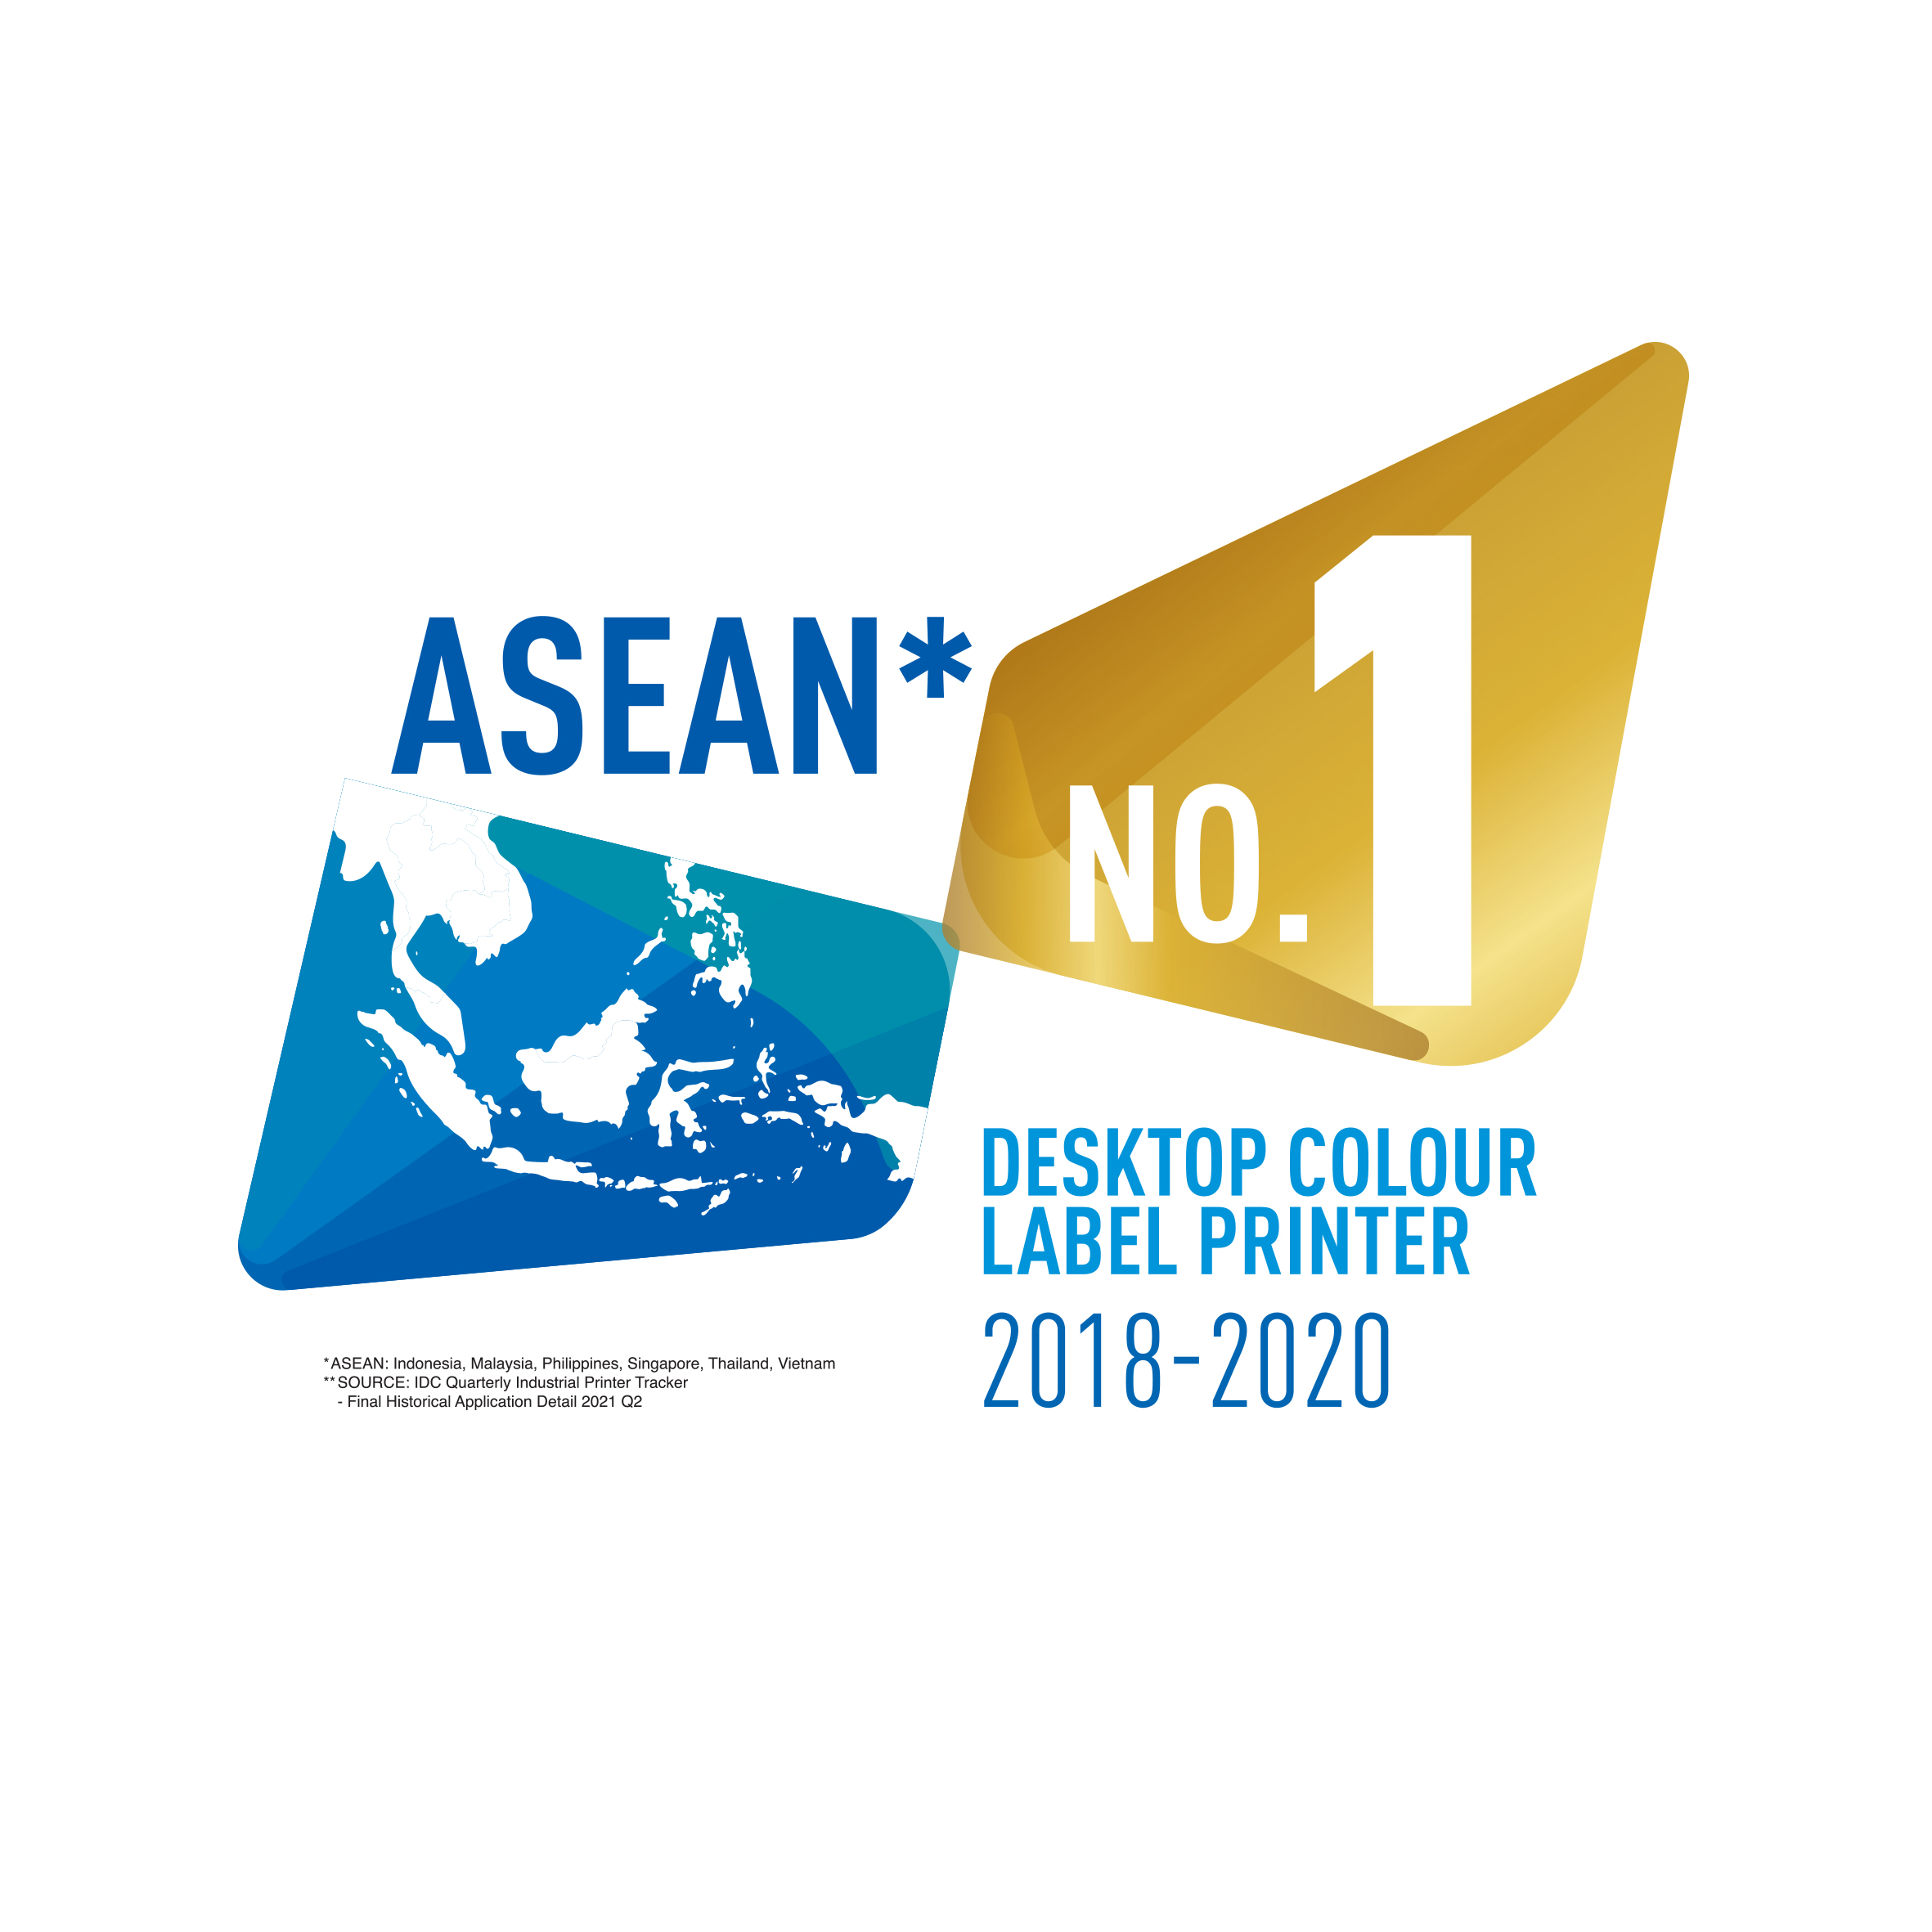 Epson khẳng định vị trí máy in nhãn màu để bàn số 1 khu vực Đông Nam Á trong 3 năm liên tiếp